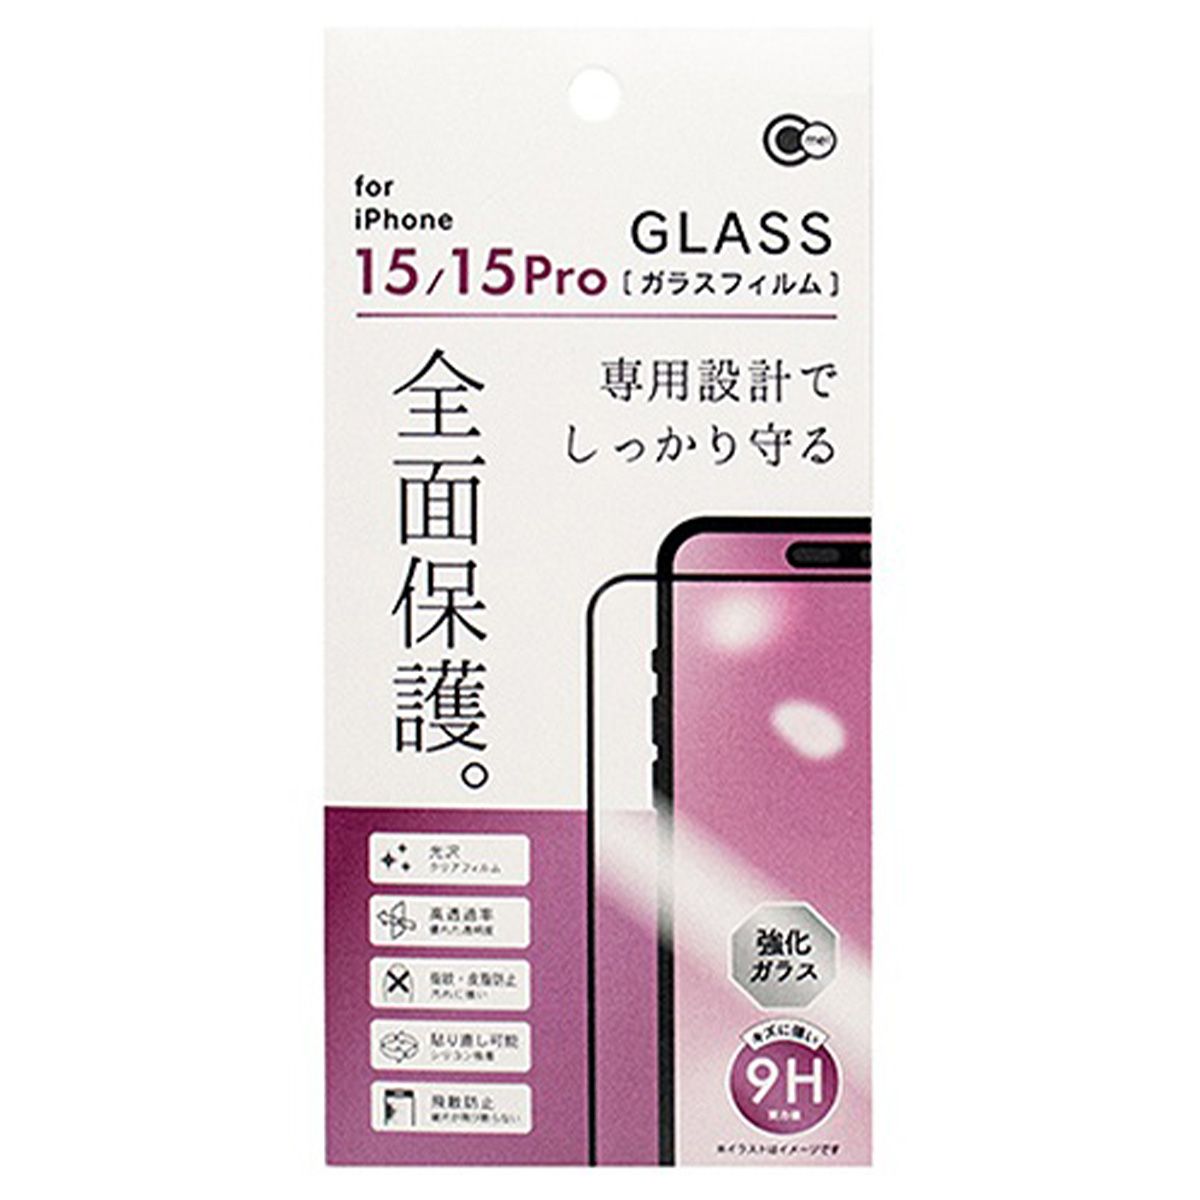 iP15 15Pro全面保護ガラスフィルム 362278